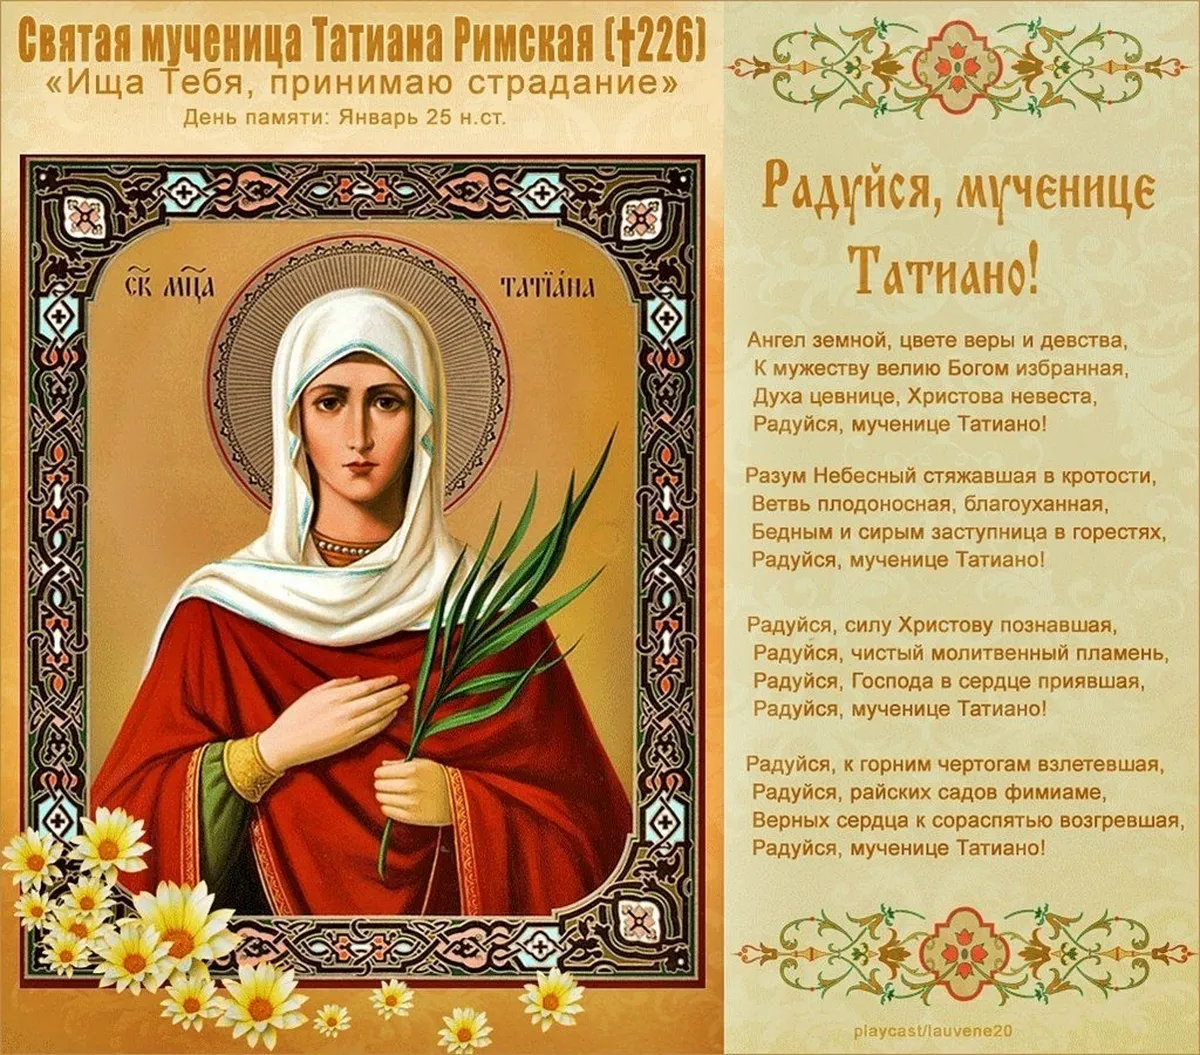 Сегодня был день ее именин егэ. 25 Января день Святой мученицы Татьяны. 25 Января Святая мученица Татиана.